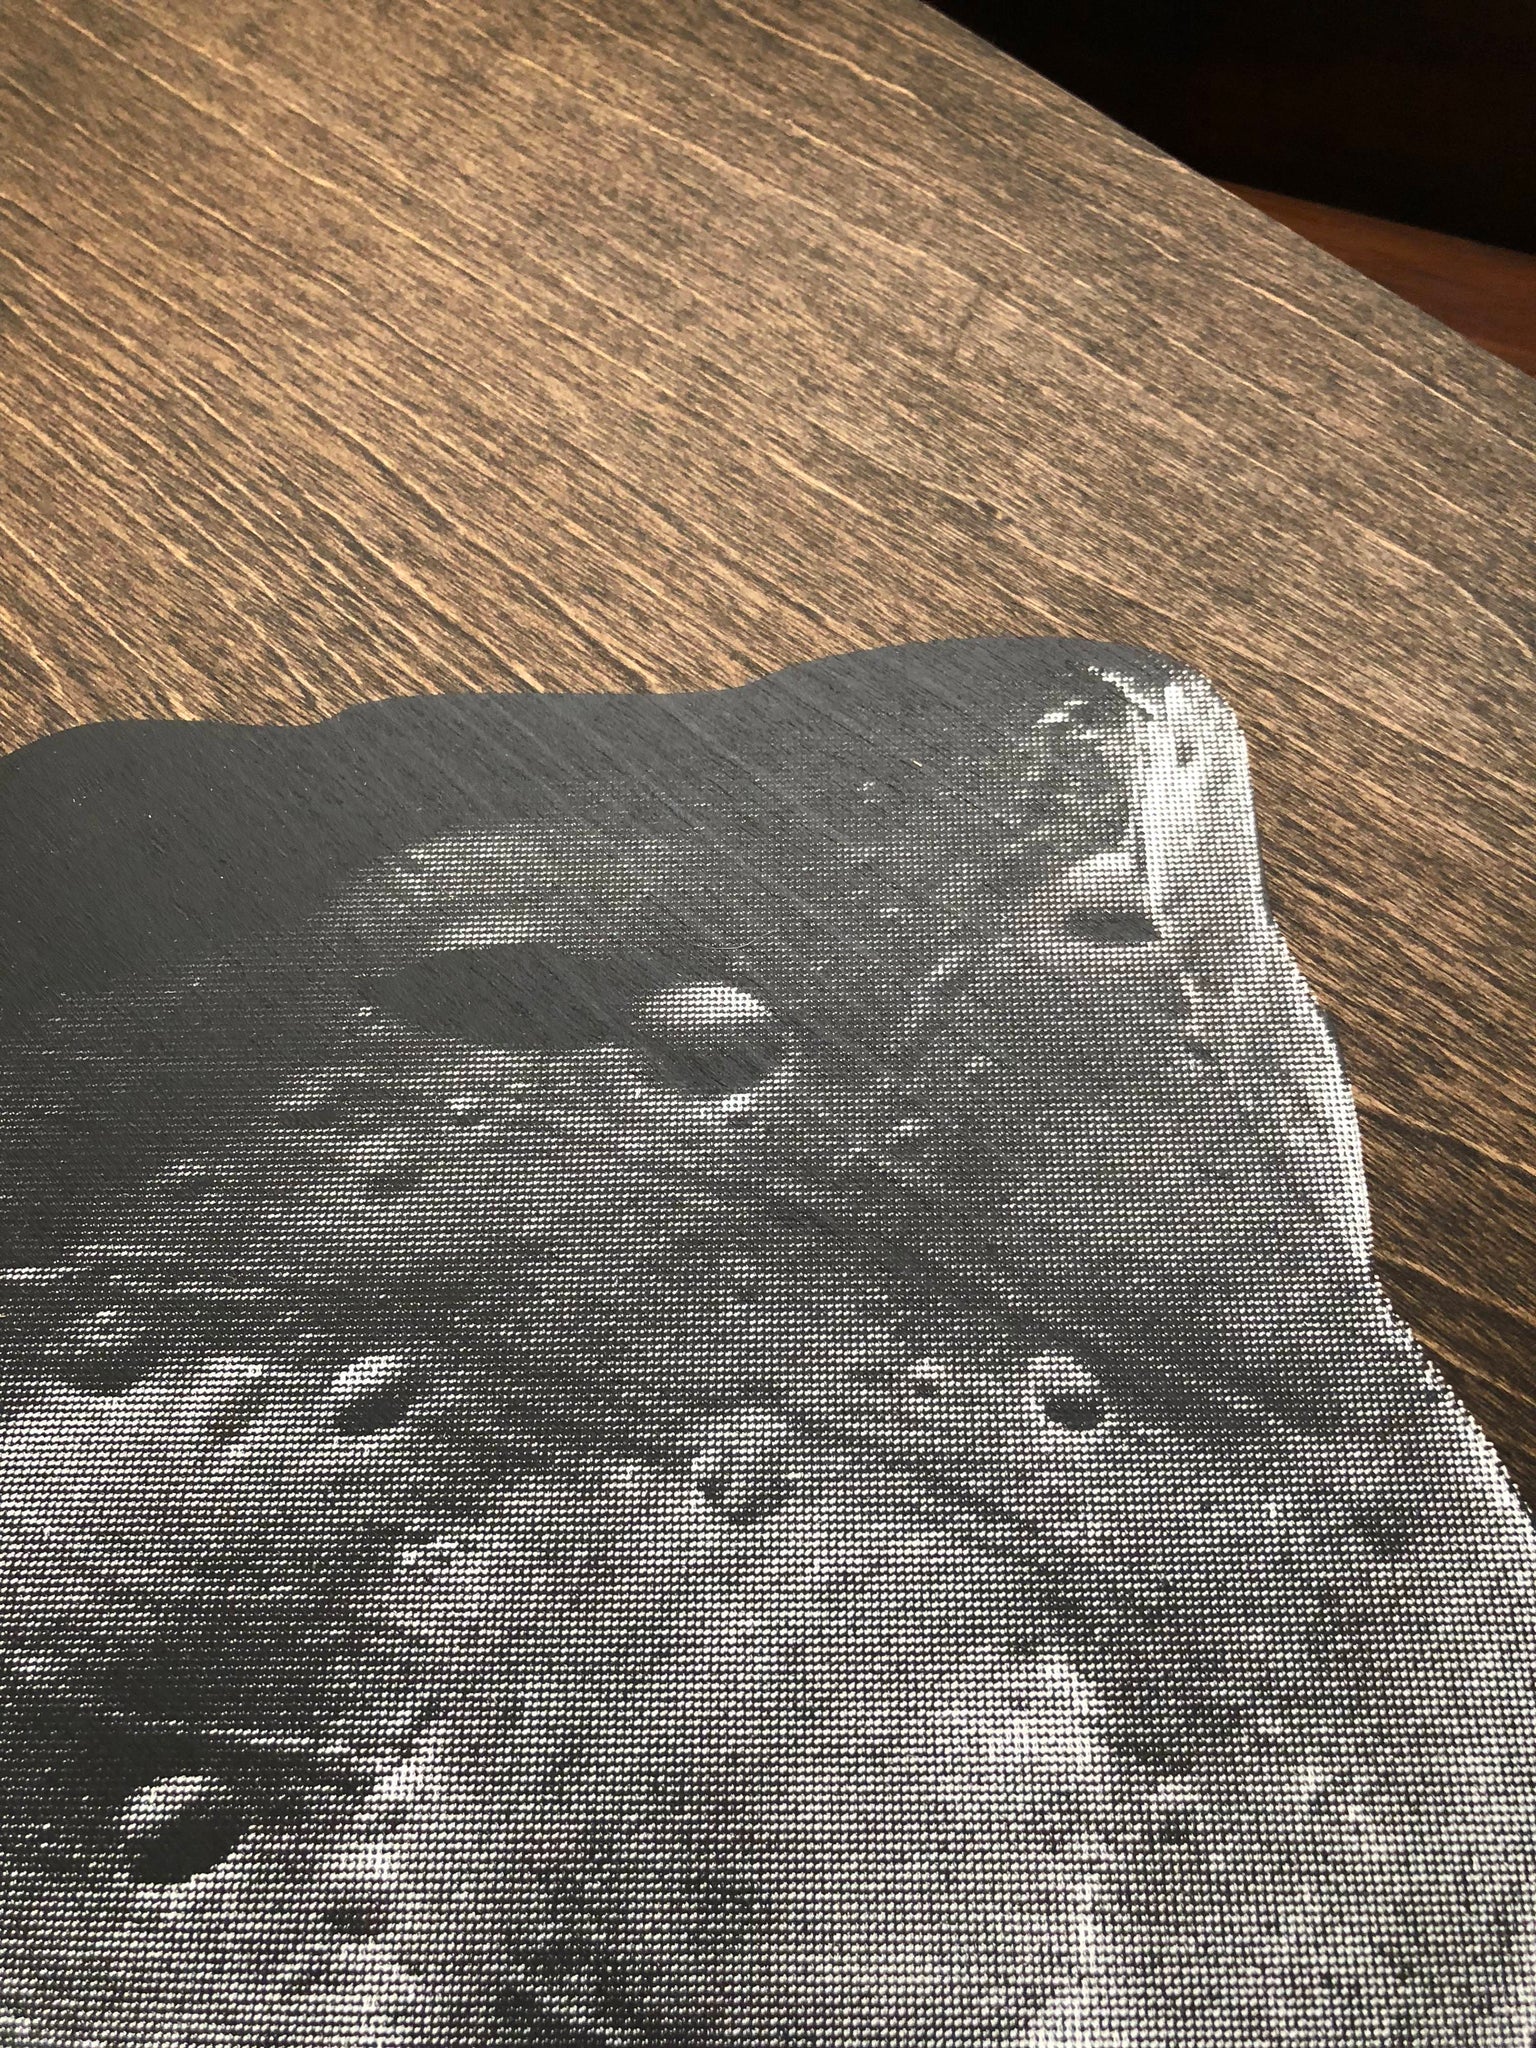 Phobos Print on Wood